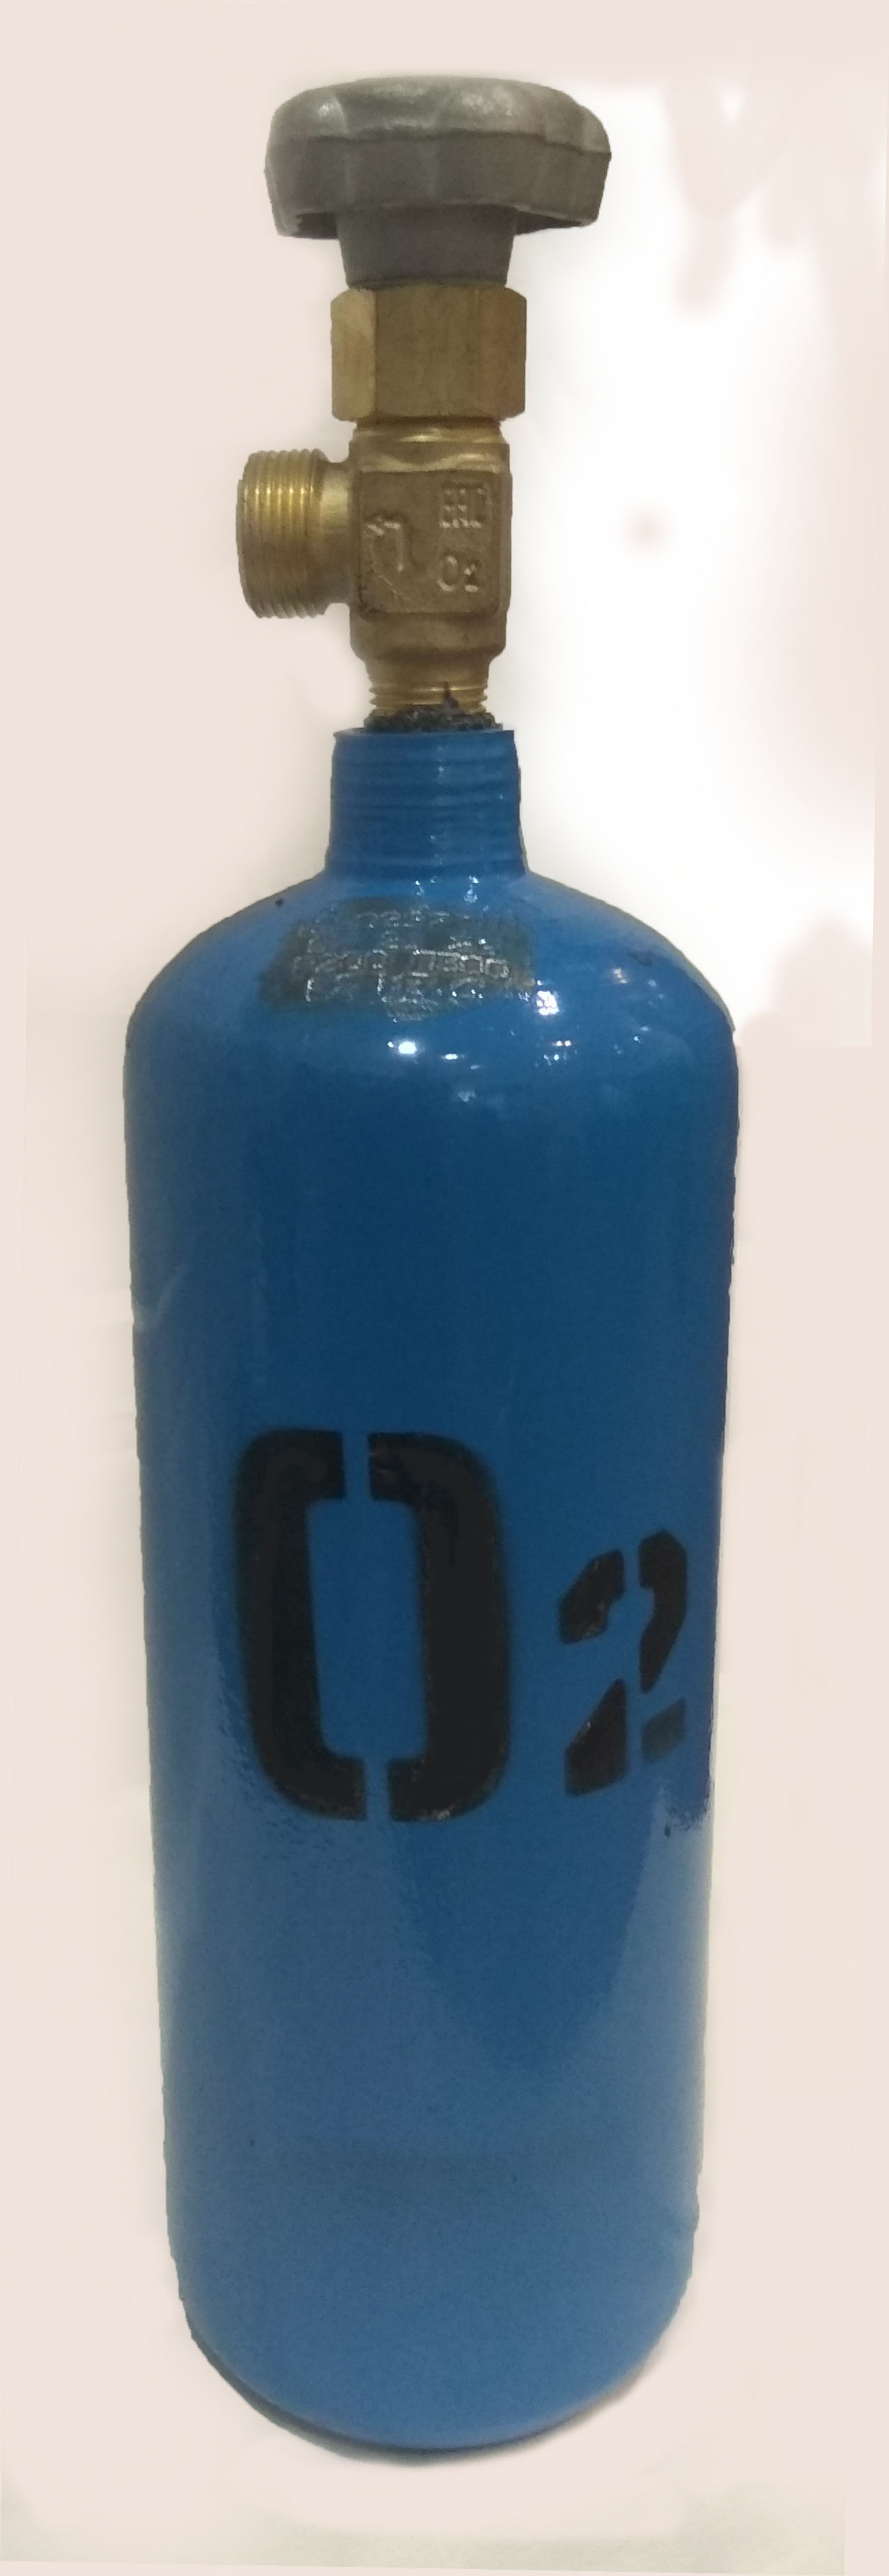 Баллон кислородный 2 литра - Сварпост - Переносные газосварочные посты .